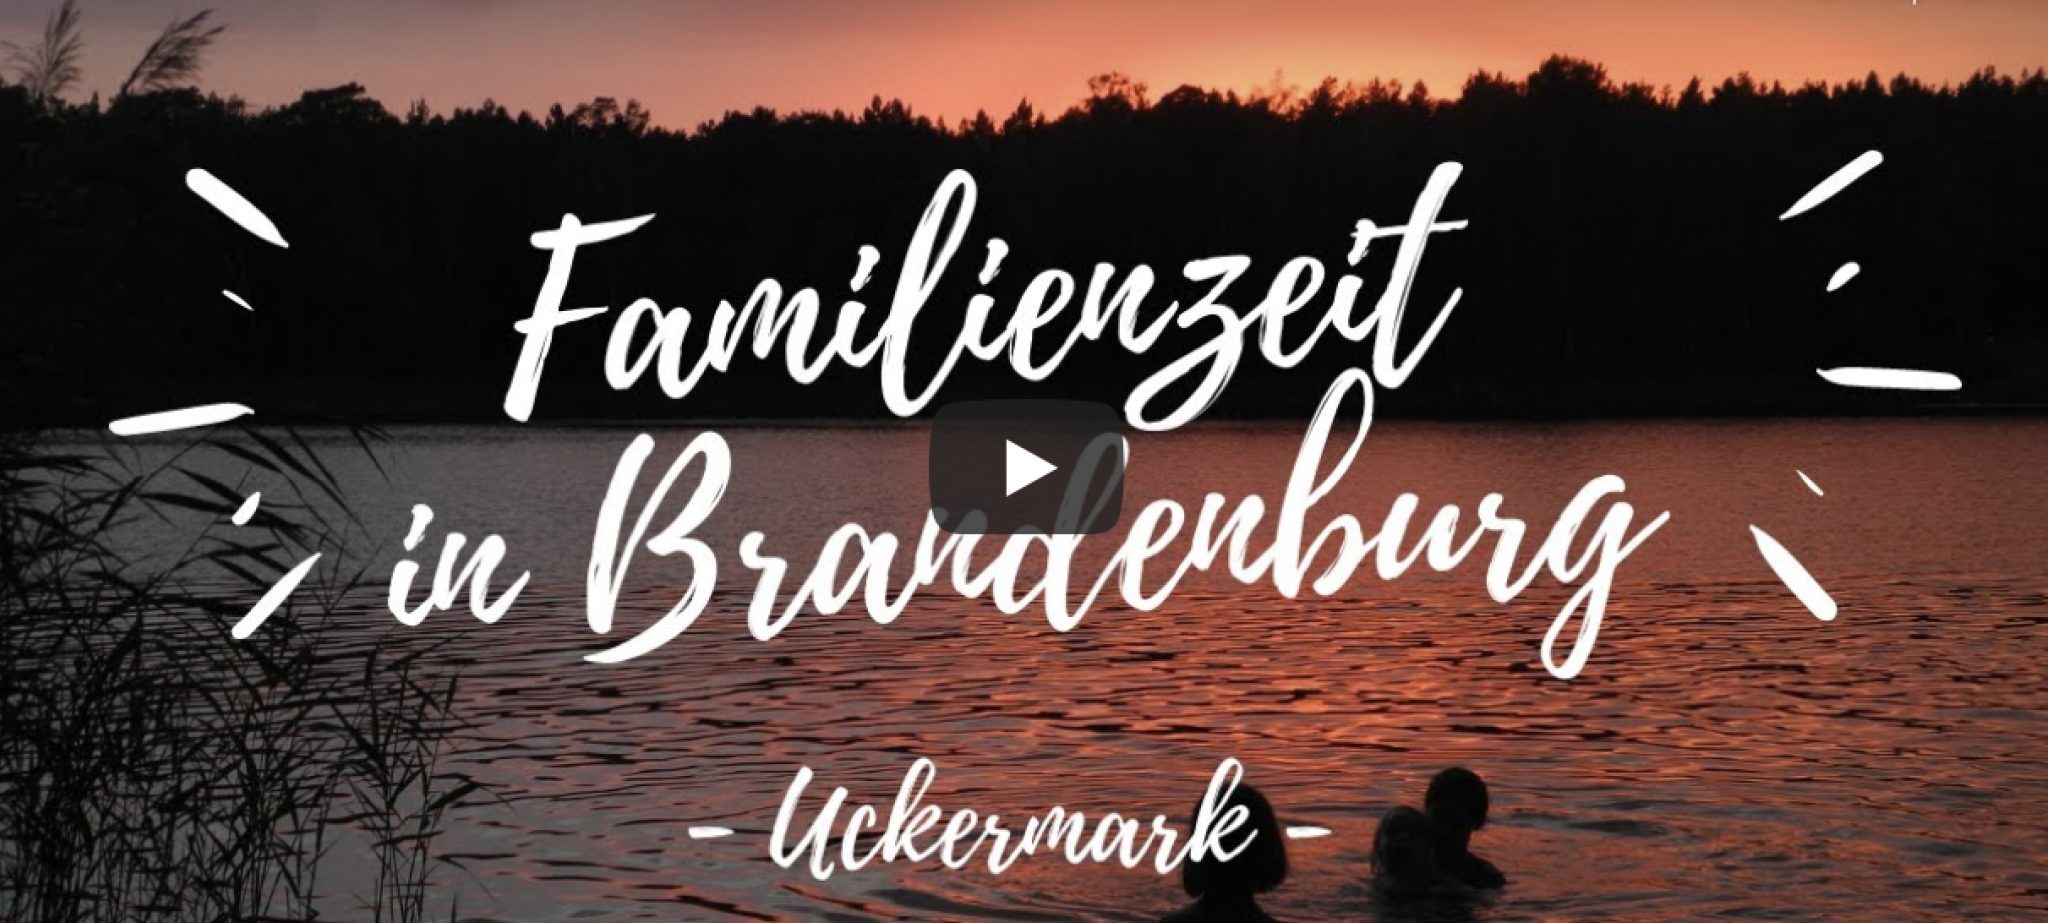 Ein See im Abendlicht. Zwei Menschen baden. Eine Aufschrift "Familienzeit in Brandenburg. Uckermark"